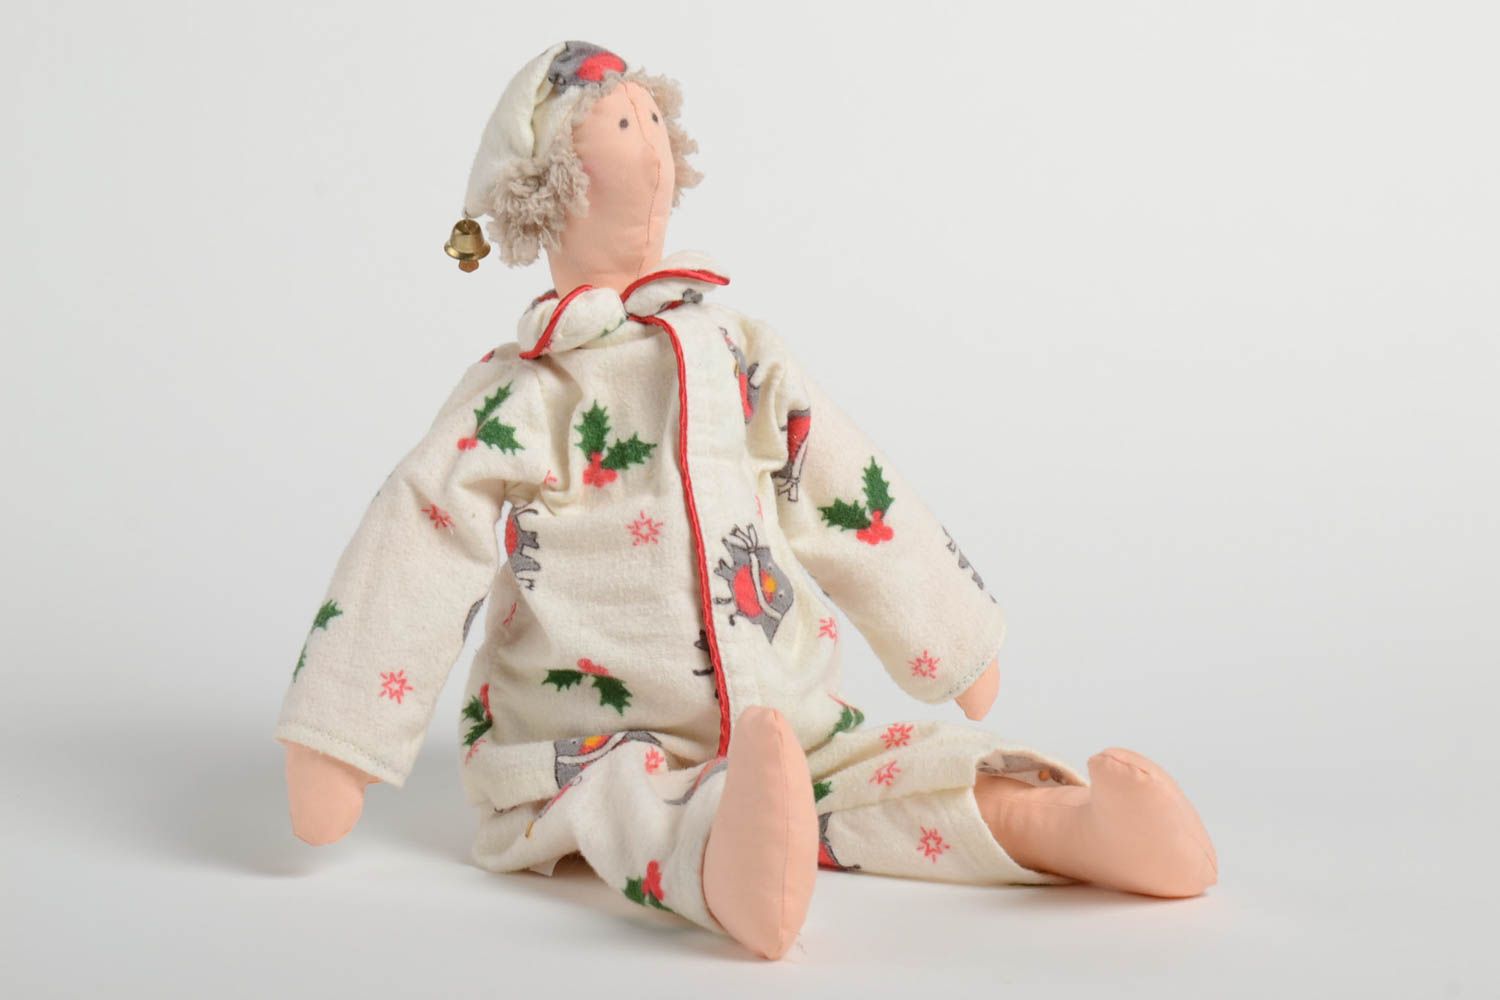 Авторская мягкая кукла ручной работы из хлопка Соня игрушка для дома и детей фото 2